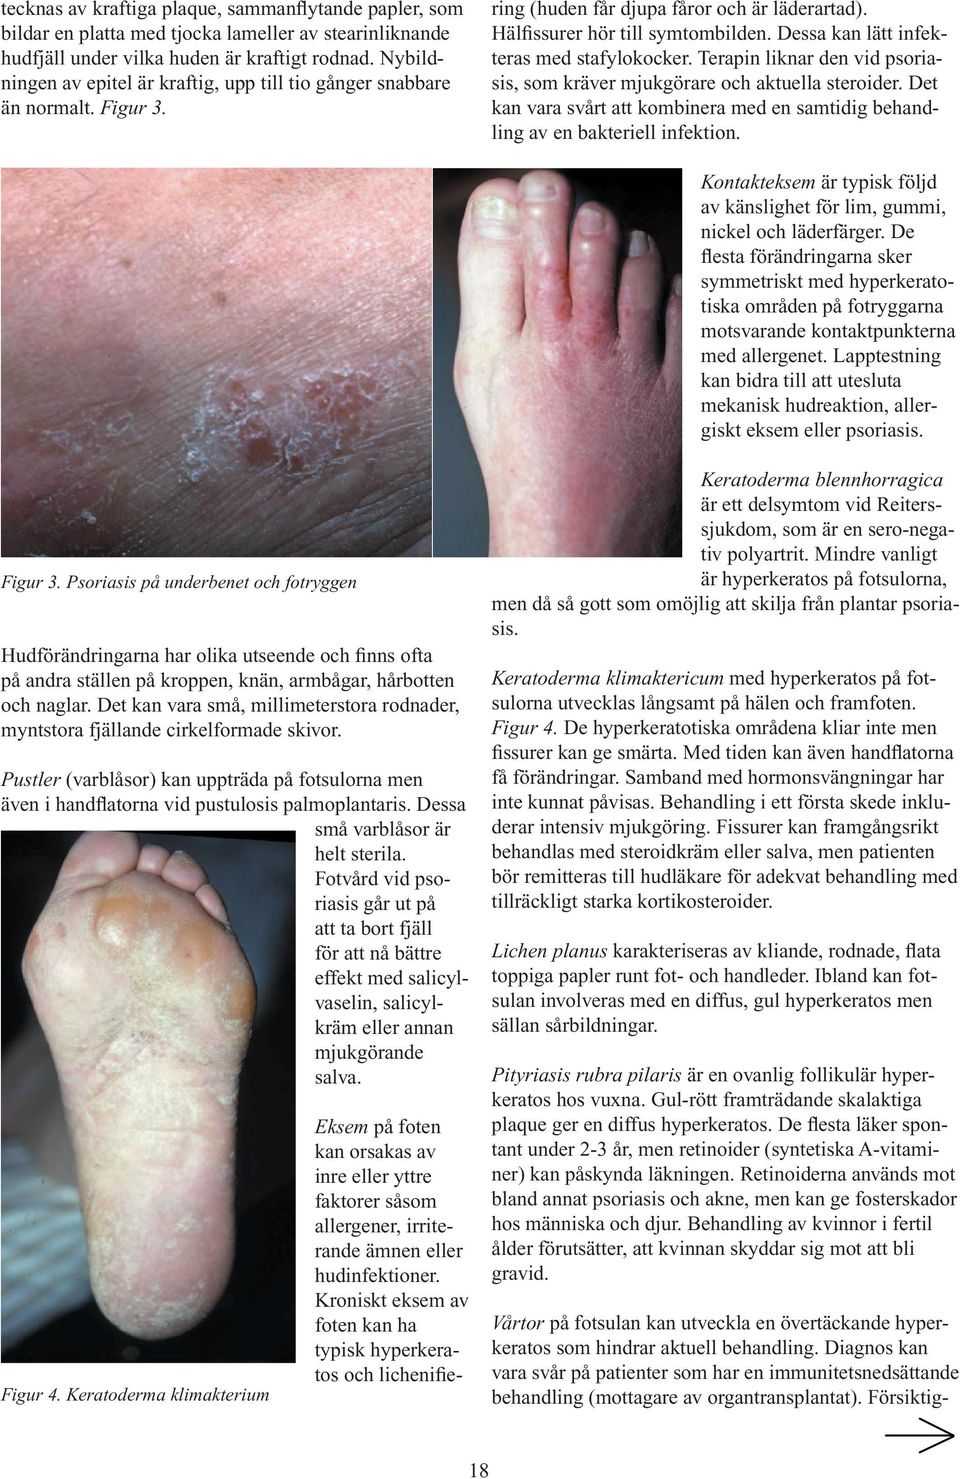 Kroniskt eksem av foten kan ha typisk hyperkeratos och lichenifiering (huden får djupa fåror och är läderartad). Hälfissurer hör till symtombilden. Dessa kan lätt infekteras med stafylokocker.